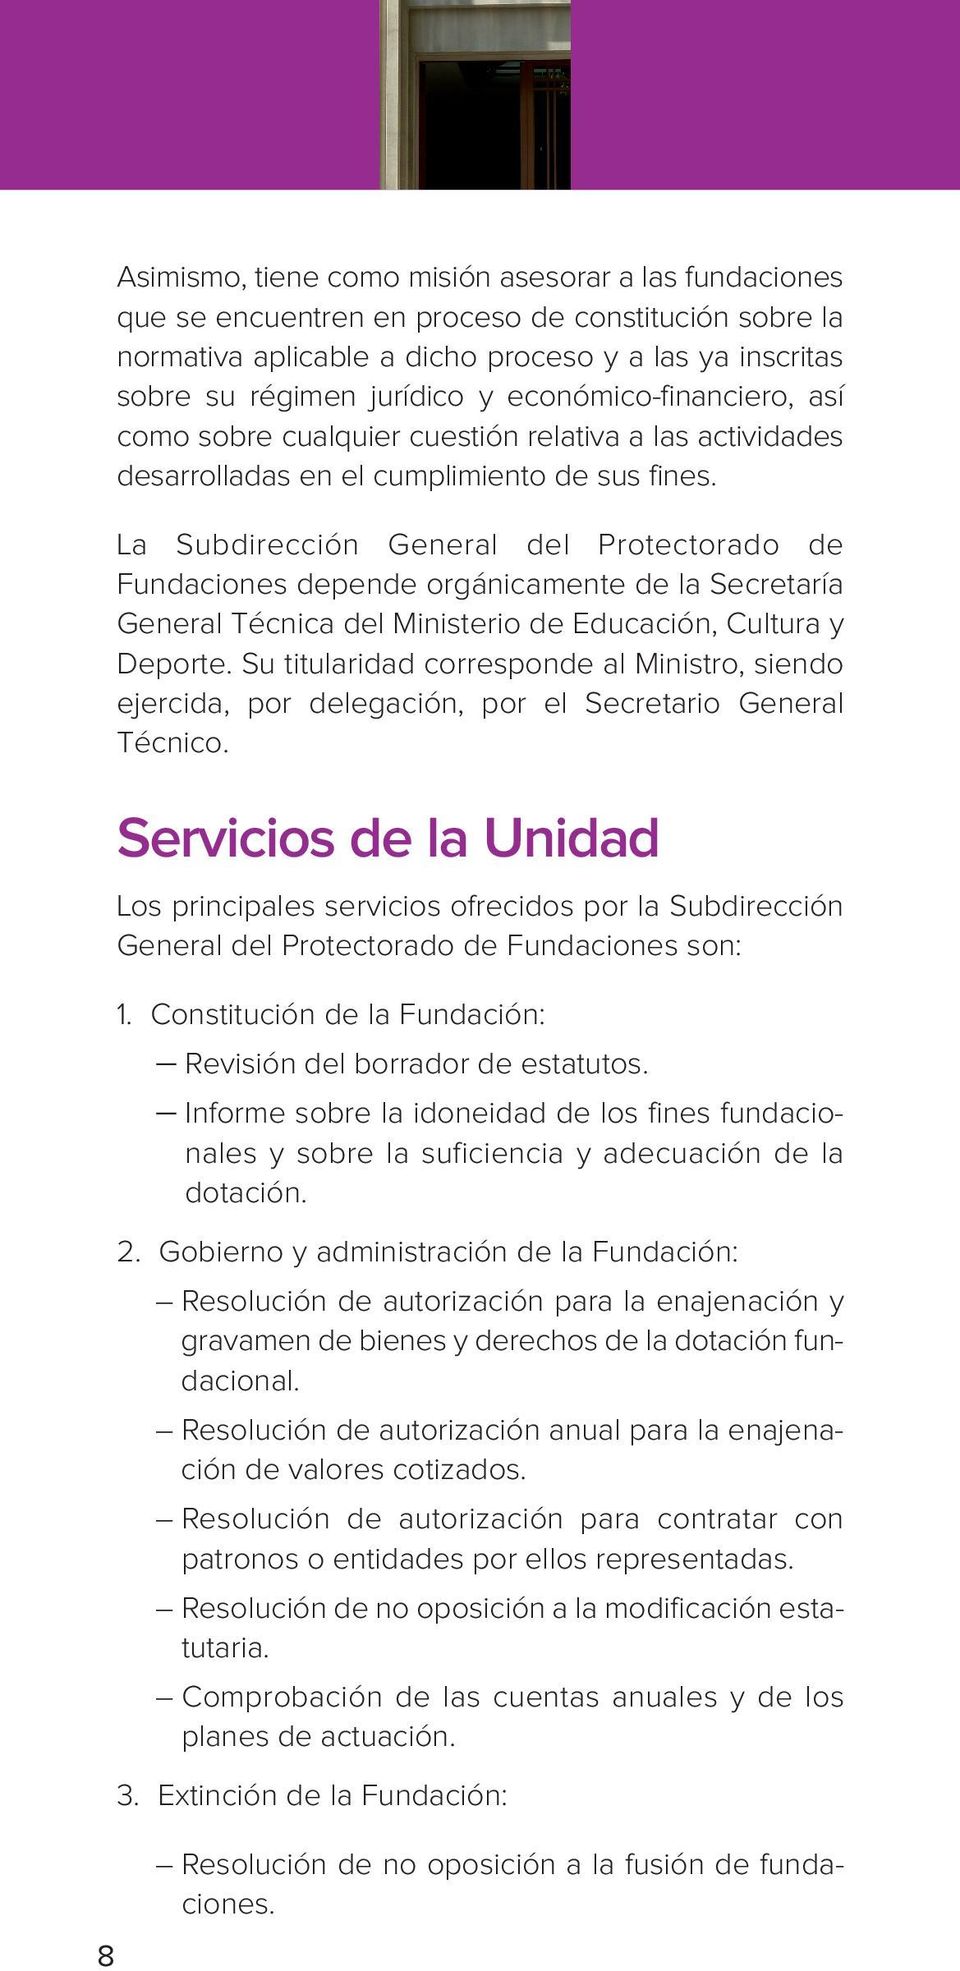 La Subdirección General del Protectorado de Fundaciones depende orgánicamente de la Secretaría General Técnica del Ministerio de Educación, Cultura y Deporte.